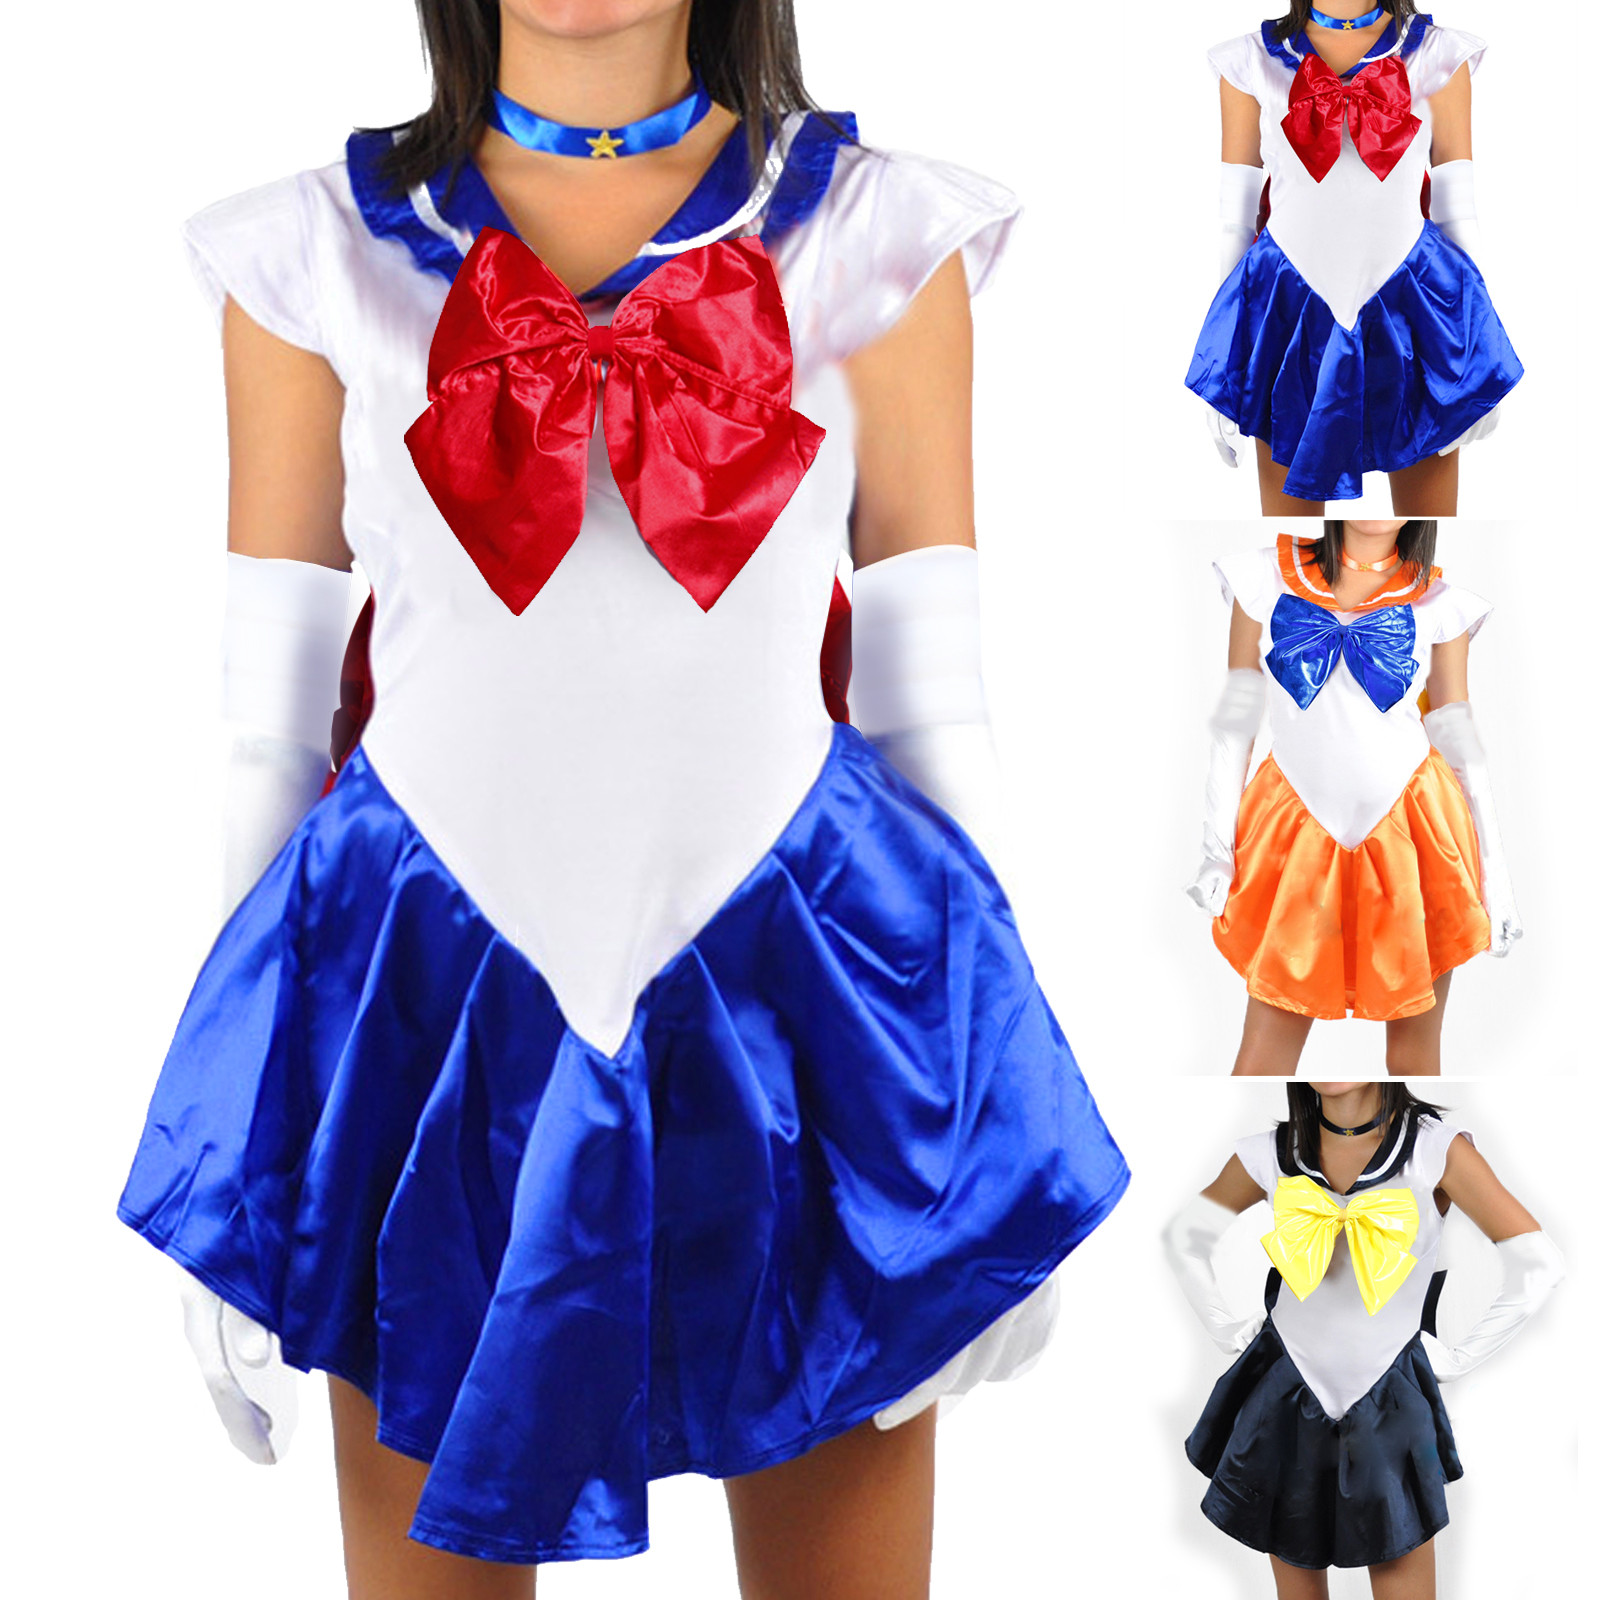 Best ideas about Sailor Moon Costume DIY
. Save or Pin Sailor Moon Venus Uranus Sailormoon Costume Uniform Fancy Now.